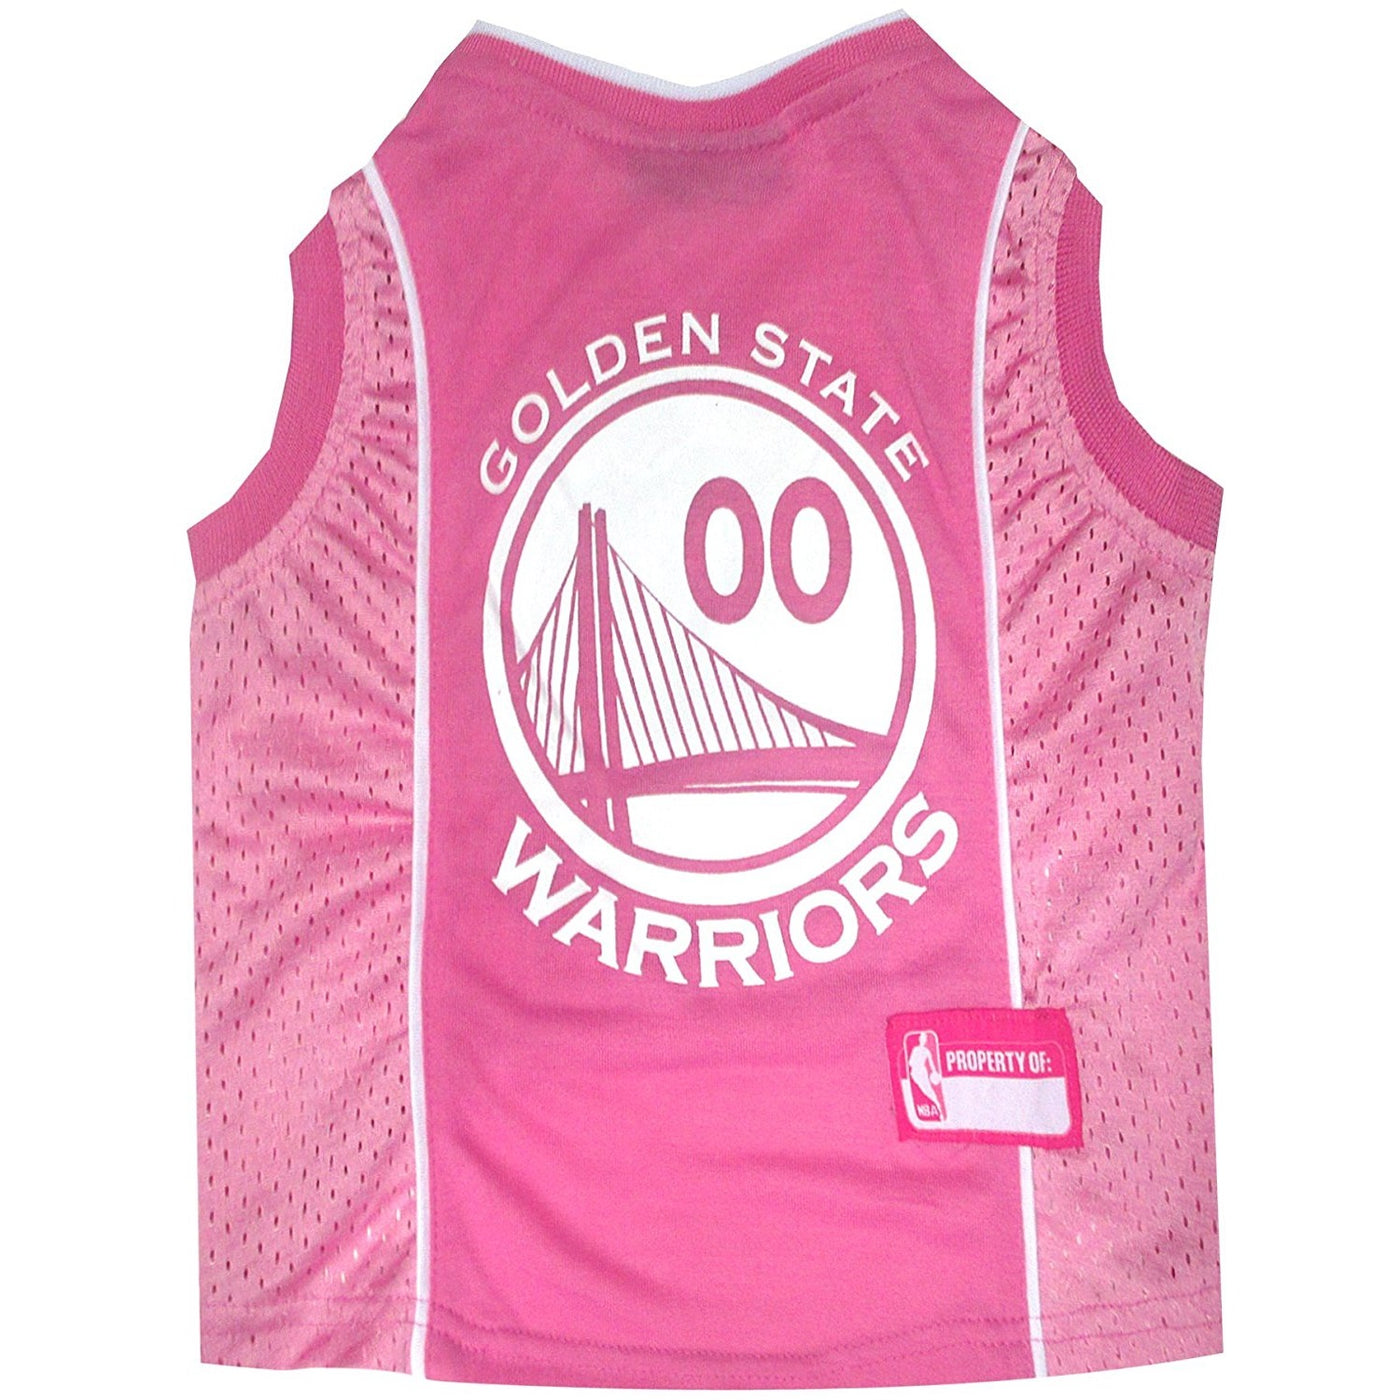 Golden State Warriors Basketball Jerseys - Team Store